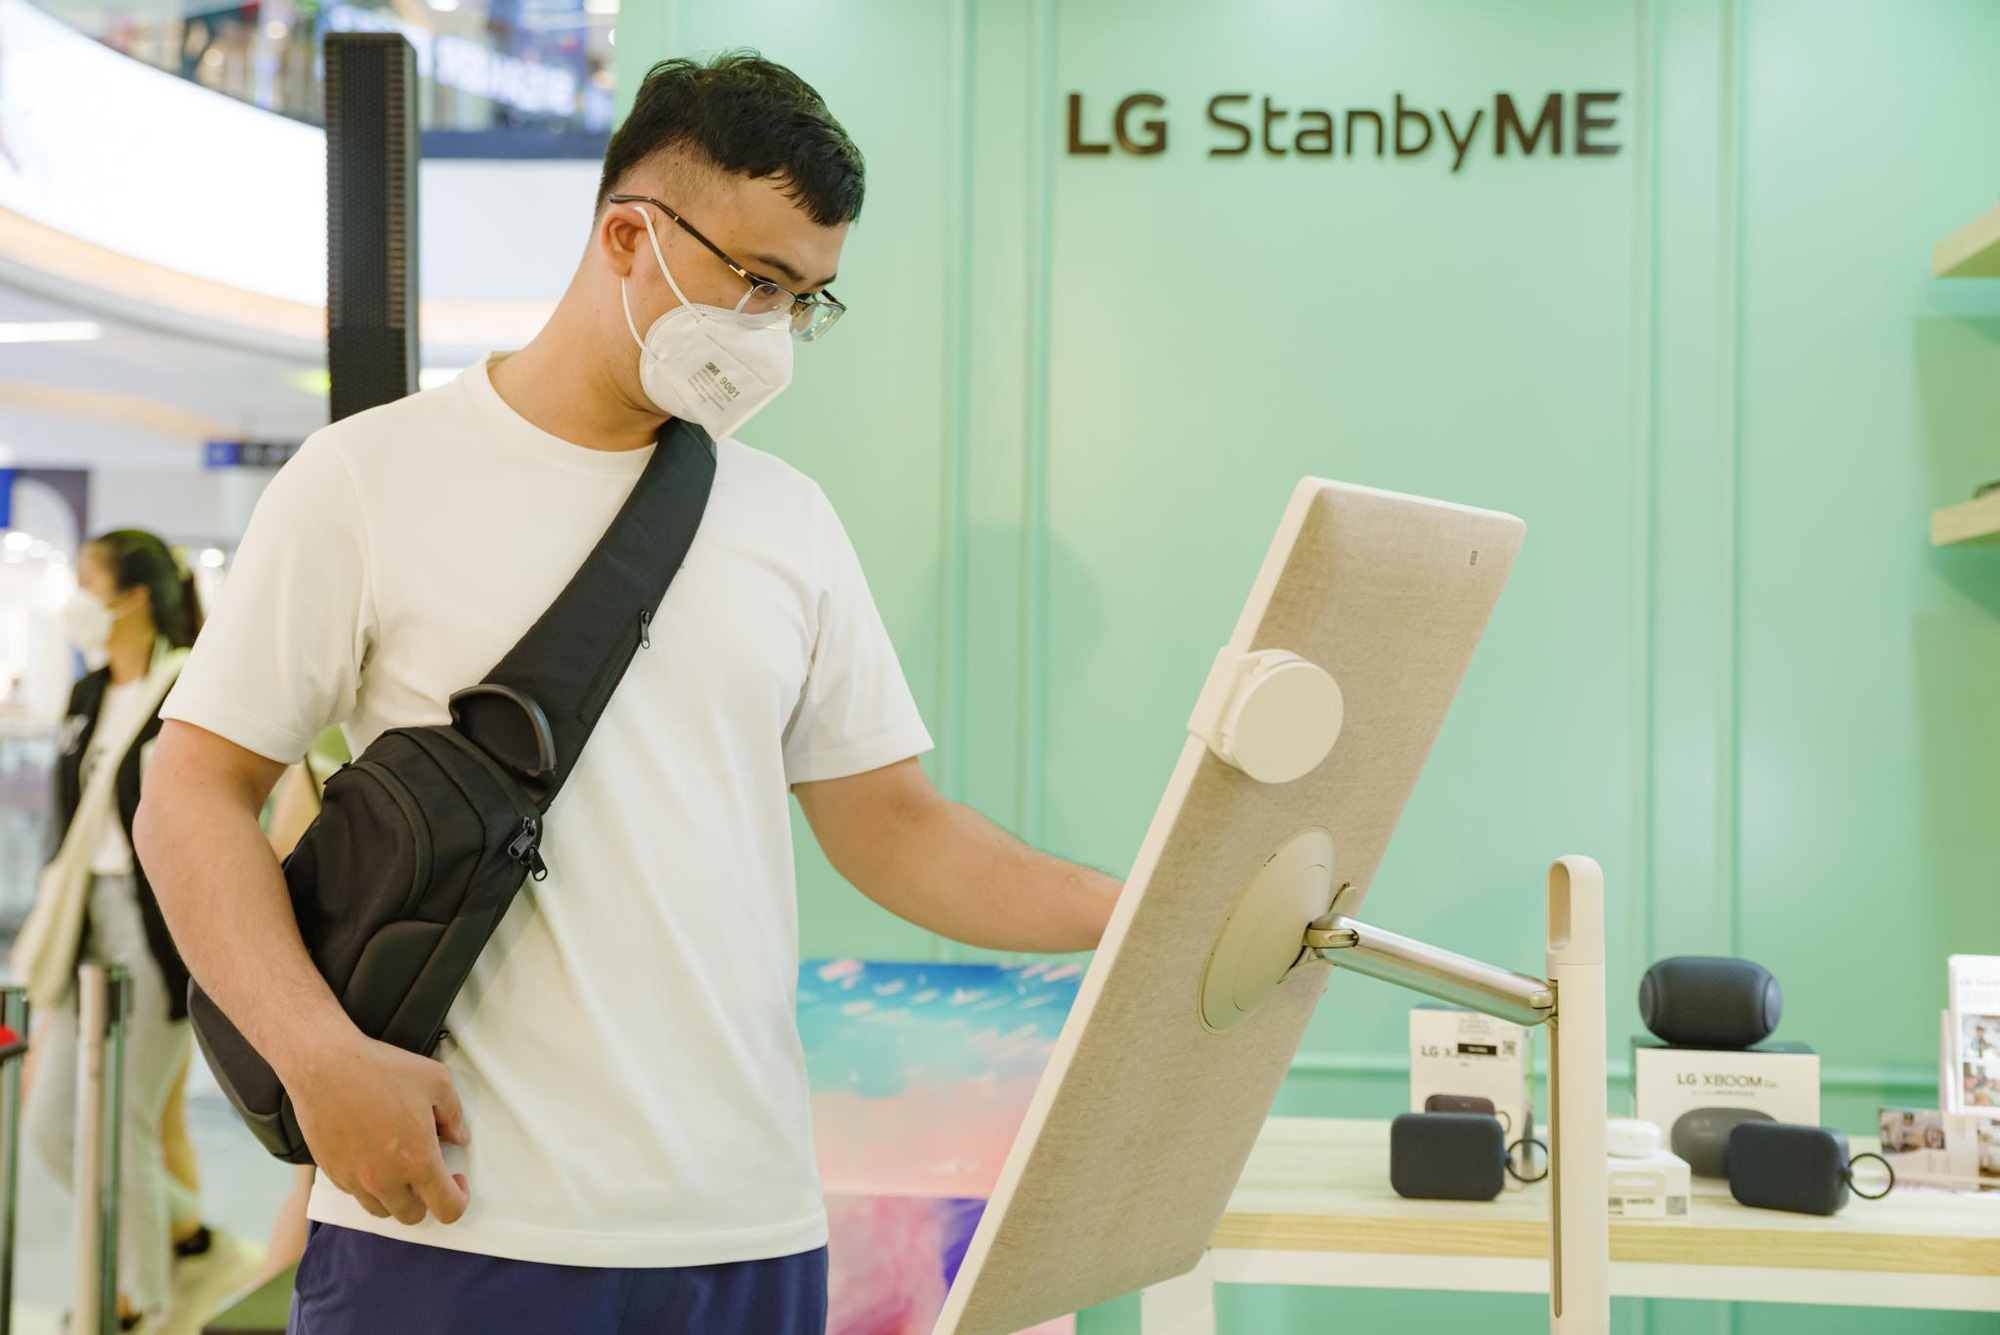 Người dùng Việt thích thú khi lần đầu trải nghiệm LG StanbyME: “Chưa từng thấy thiết bị cá nhân nào thú vị đến vậy” - Ảnh 5.